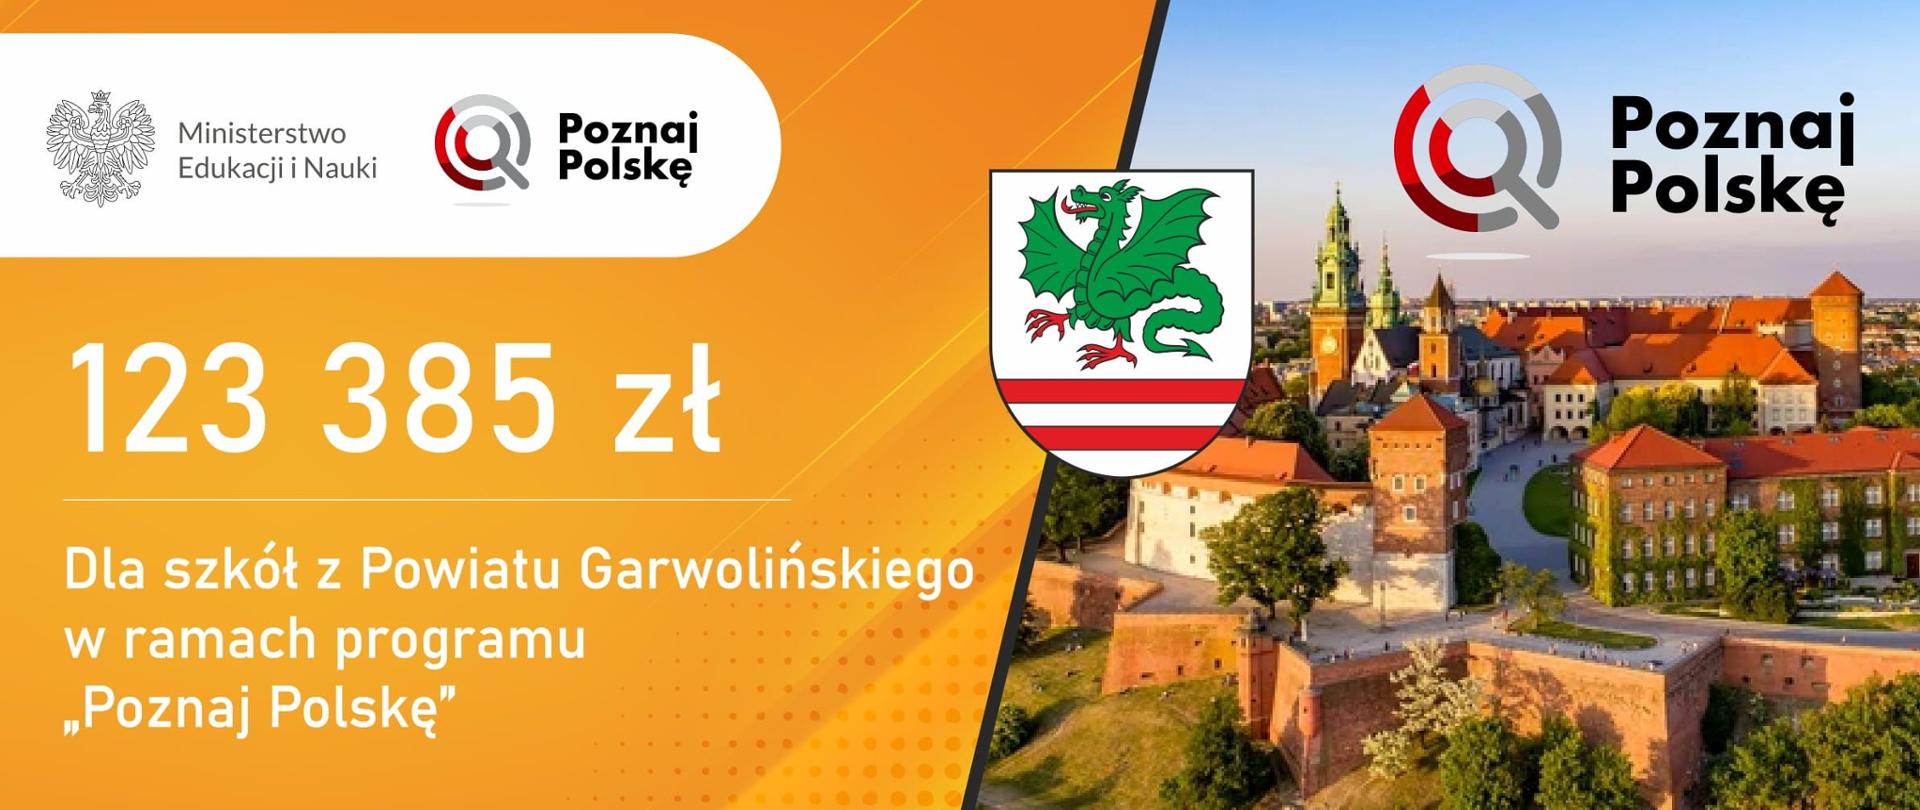 Poznaj Polskę - informacja dotycząca otrzymanego dofinansowania 